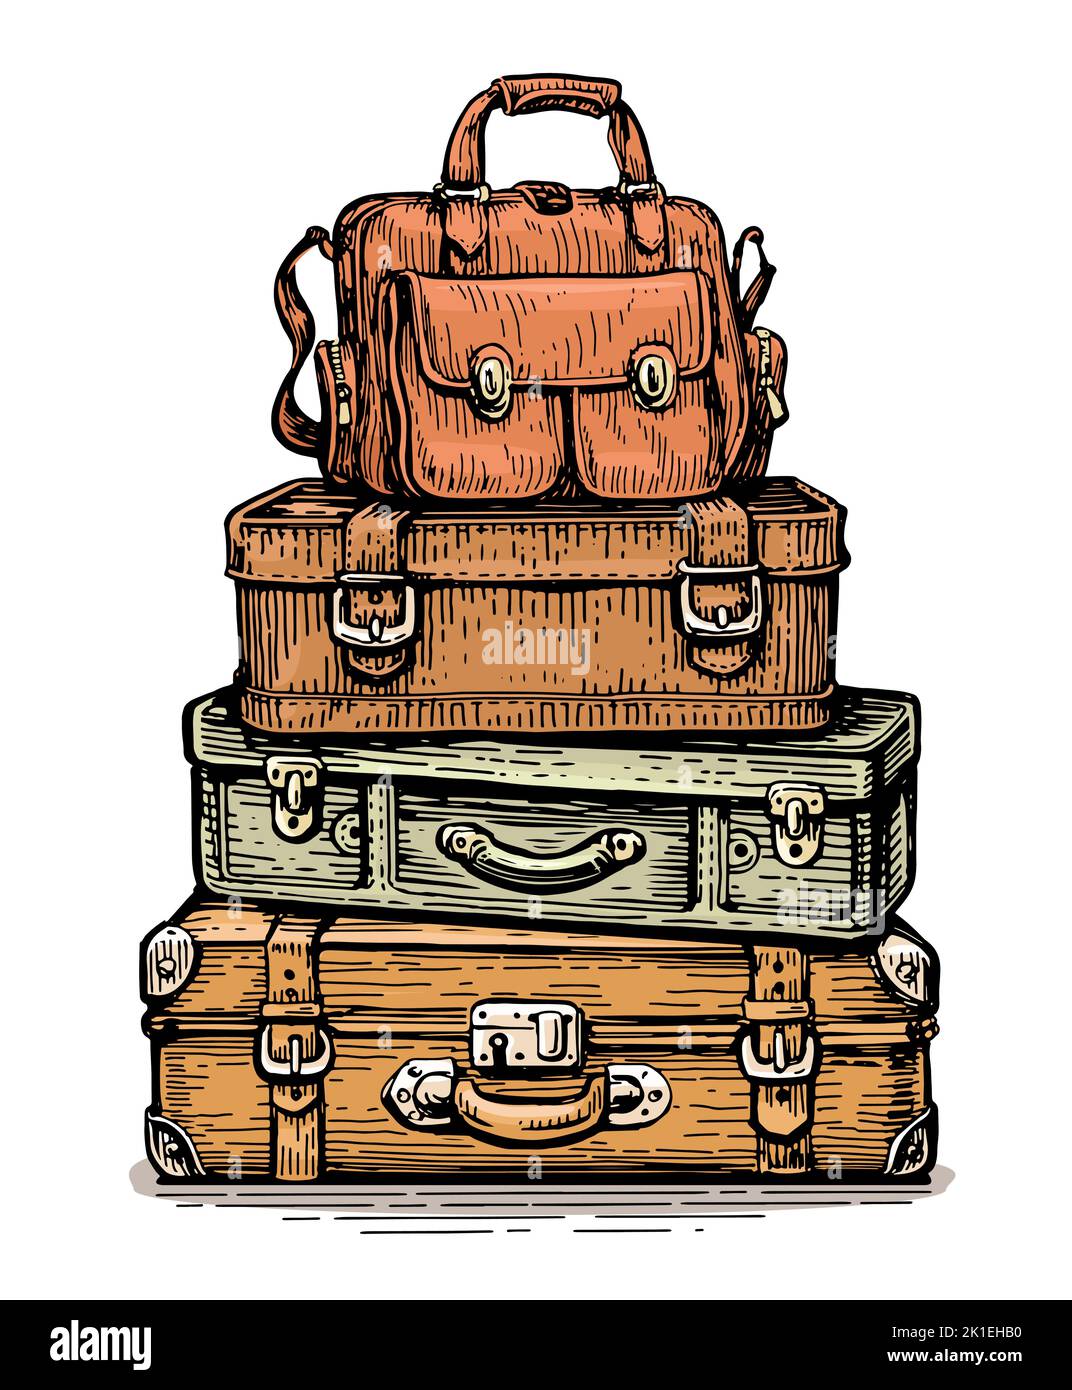 Haufen alter alter Koffer. Bunte Aktentaschen stapeln, Reisetaschen, Gepäck mit Schlössern und Griffen. Urlaubskonzept Stock Vektor